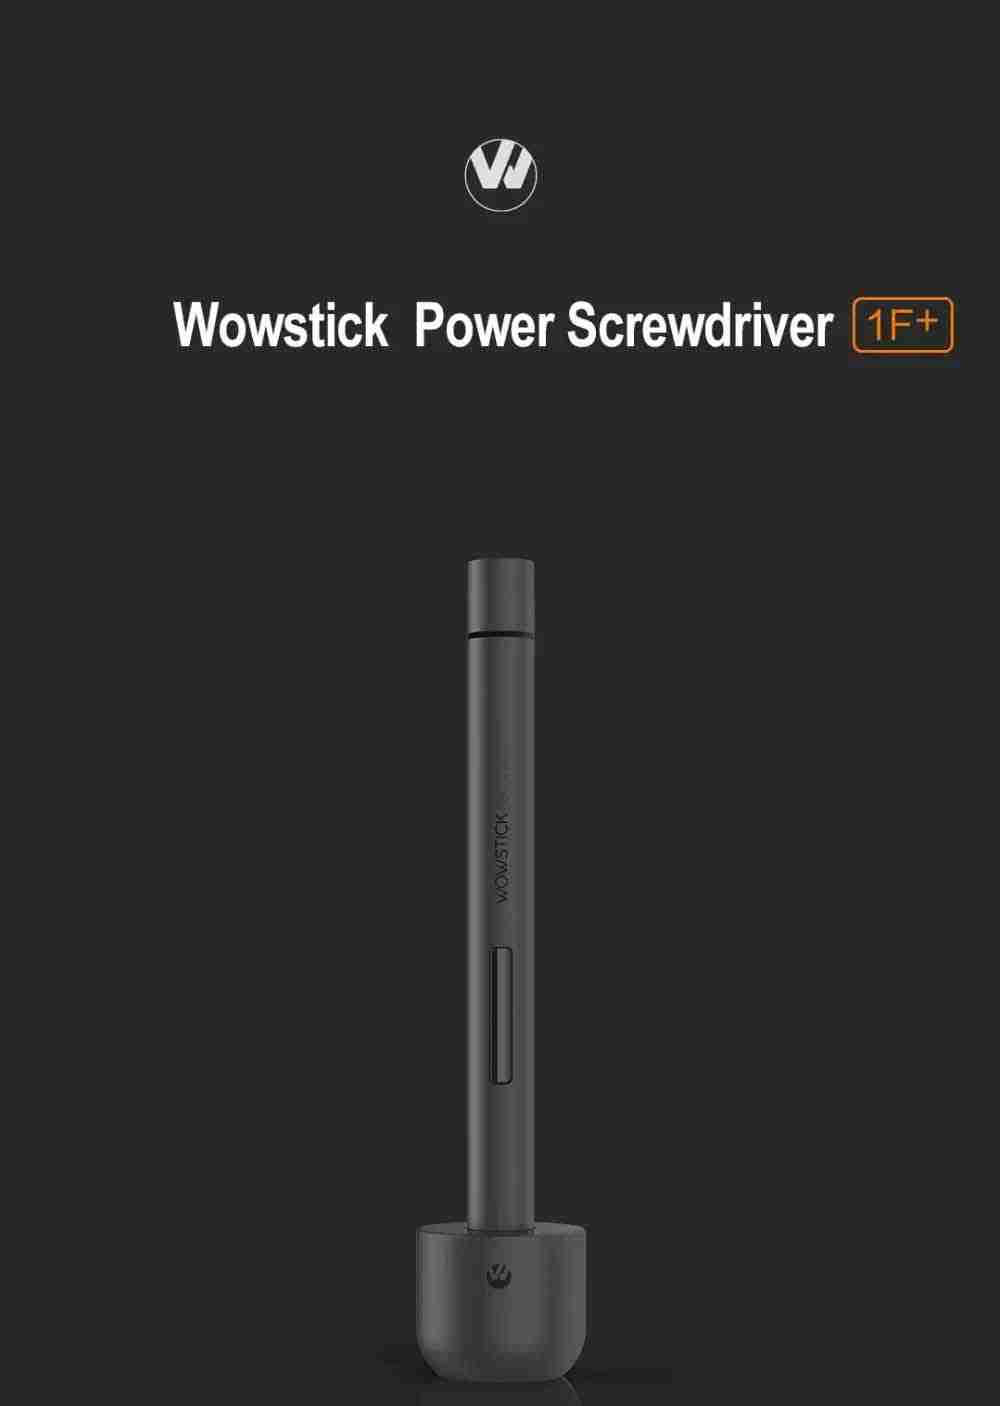 Xiaomi Wowstick 1F+ 69 in 1 Electric Screwdriver